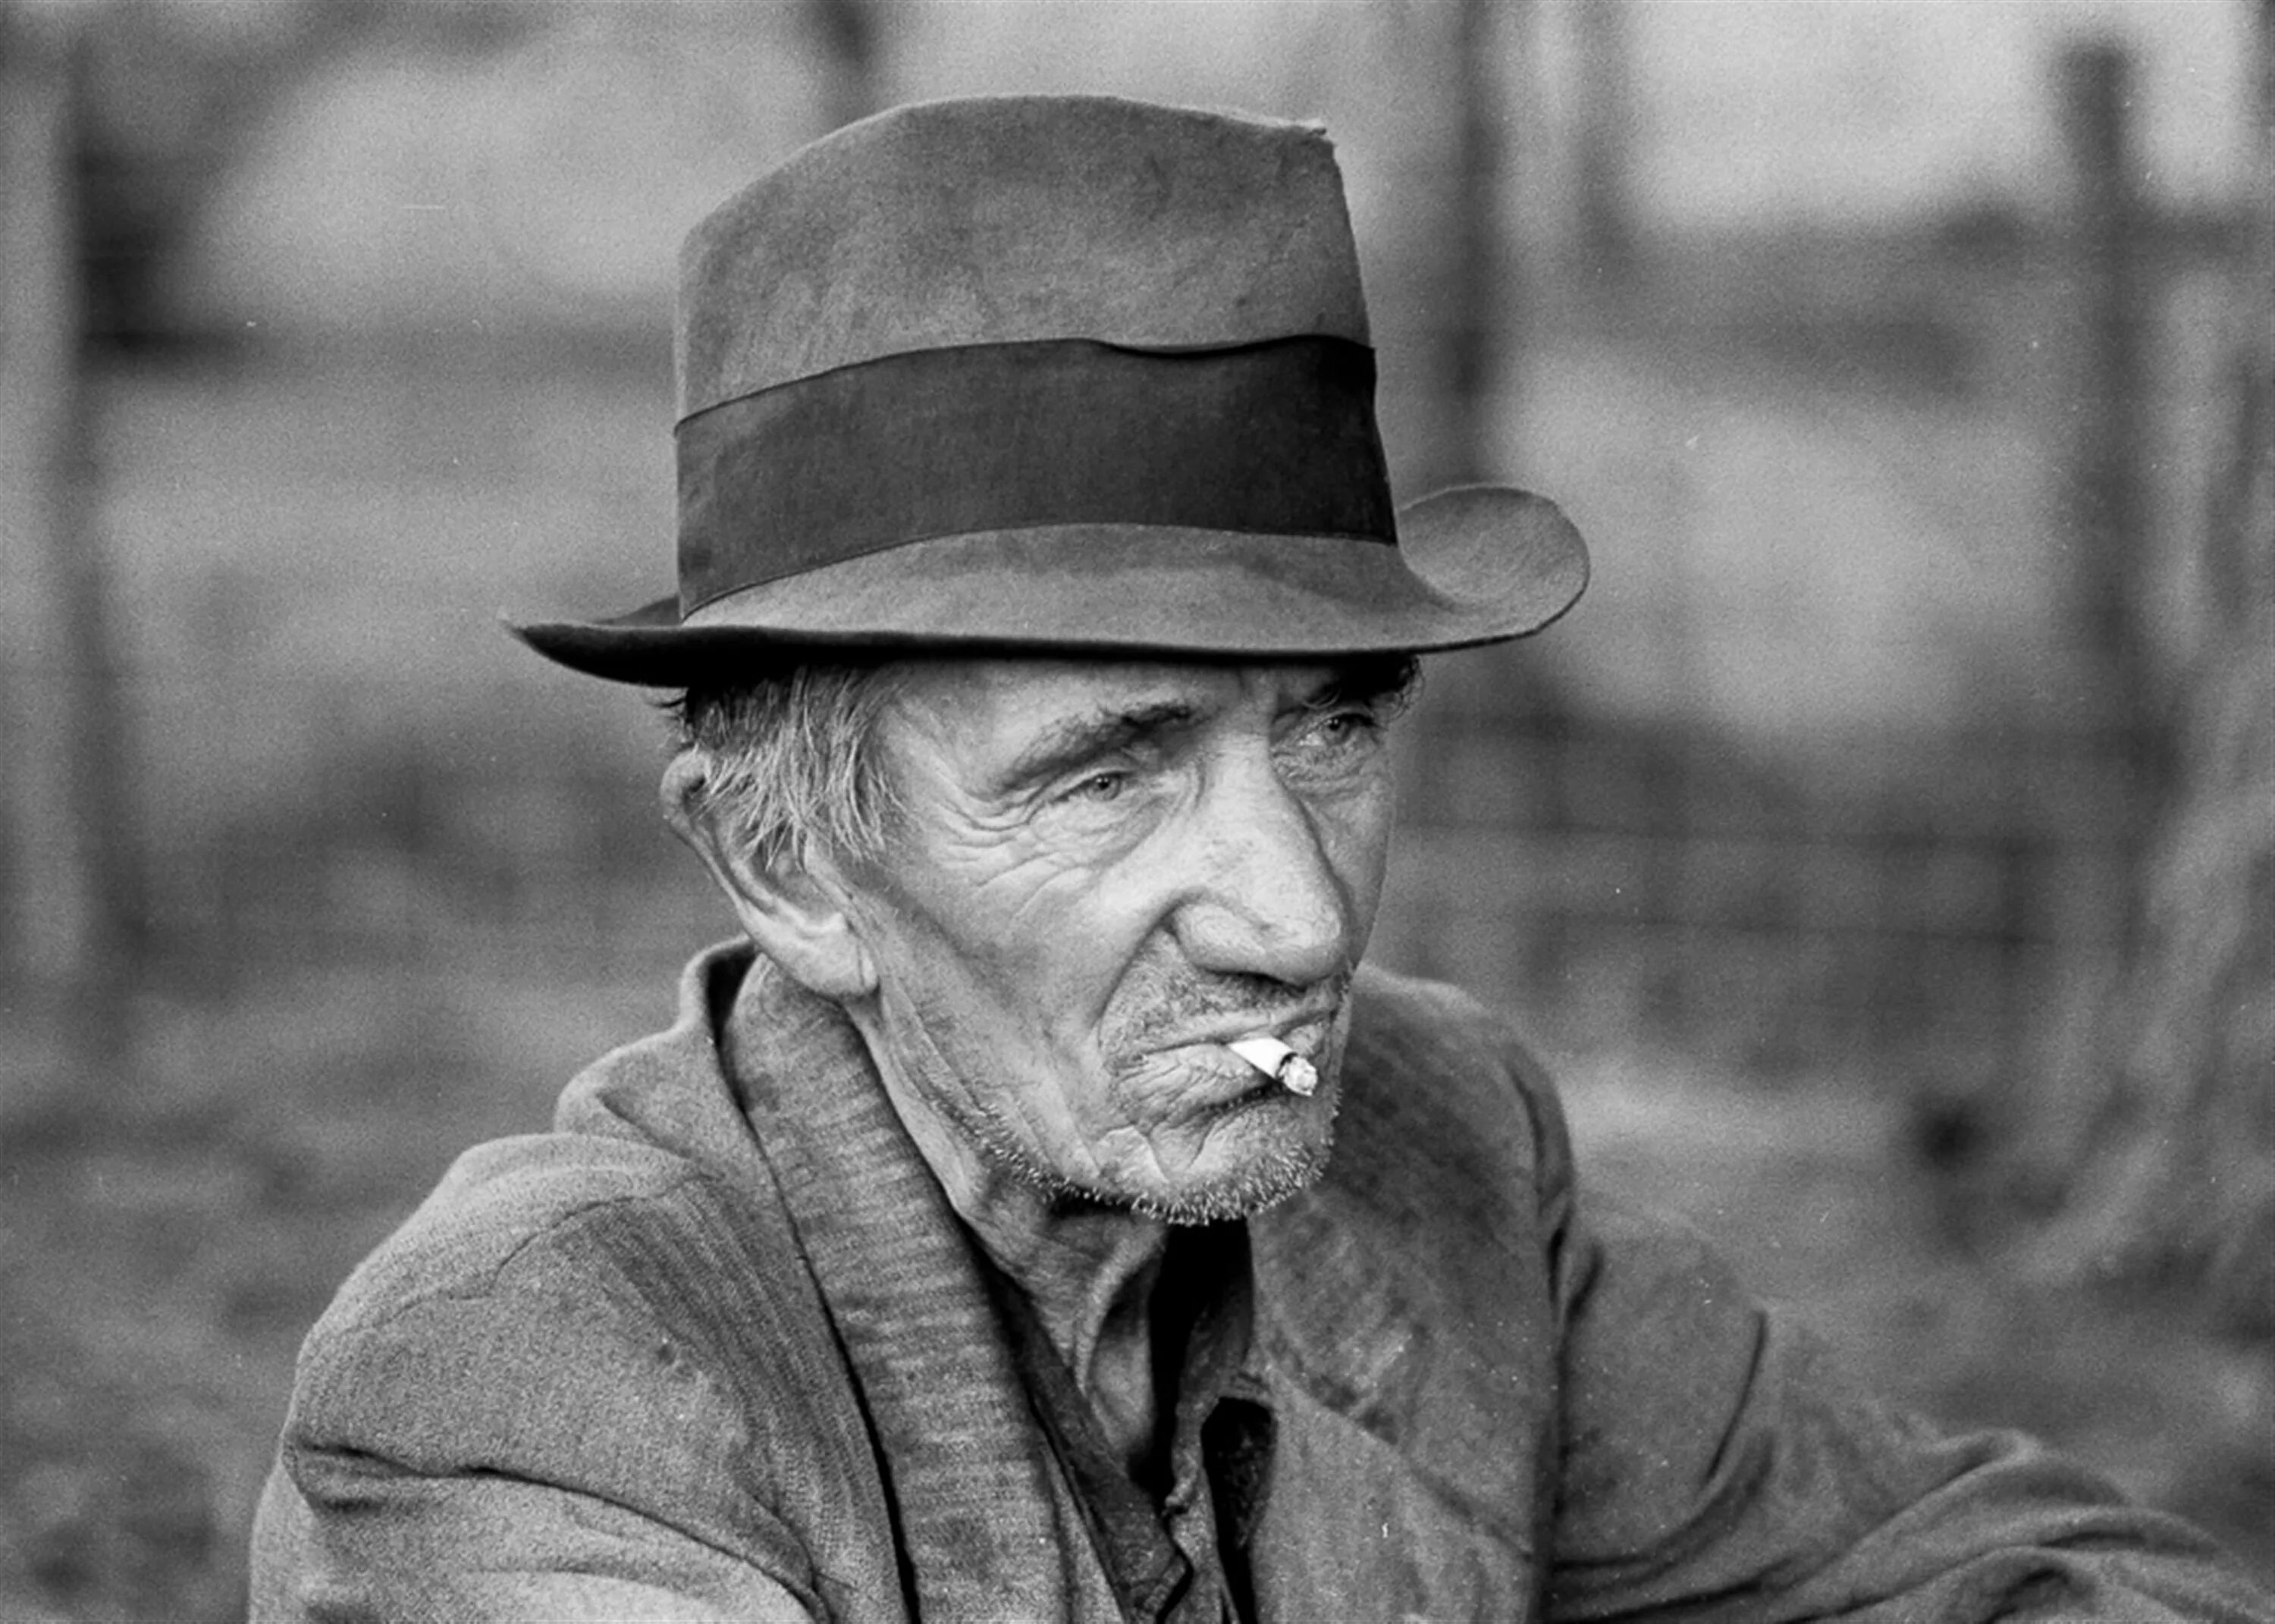 Килгор Траут Курт Воннегут. Пожилой мужчина в шляпе. Старые портреты. Портрет пожилого мужчины.